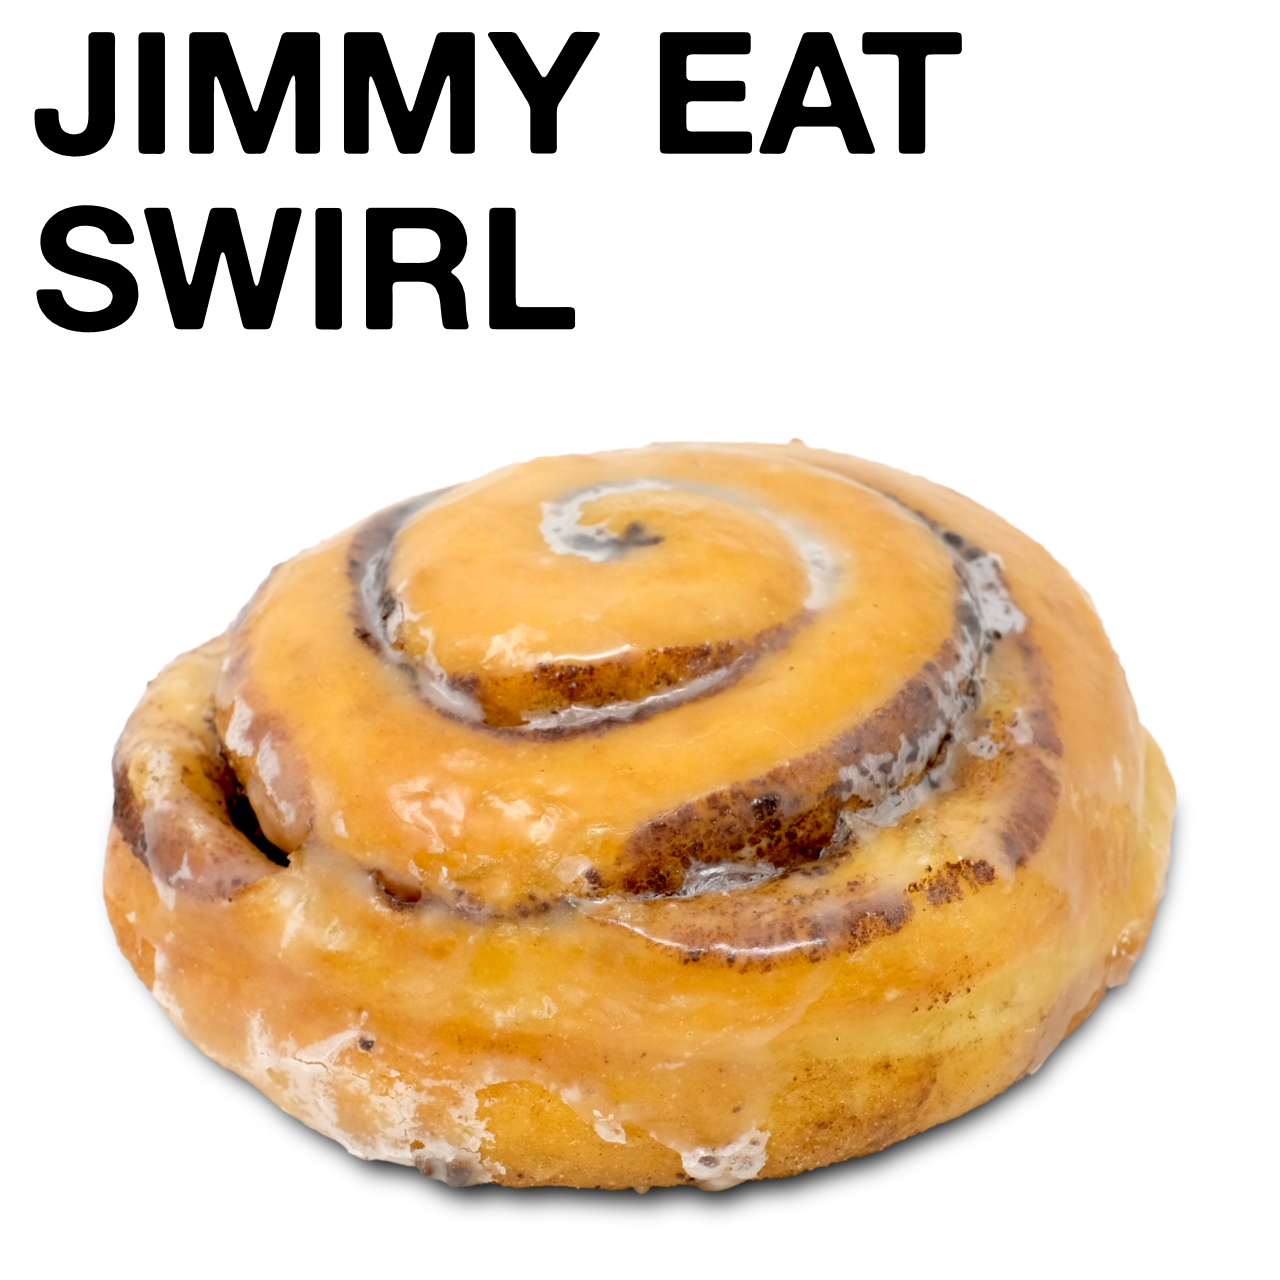 Jimmy Eat Swirl